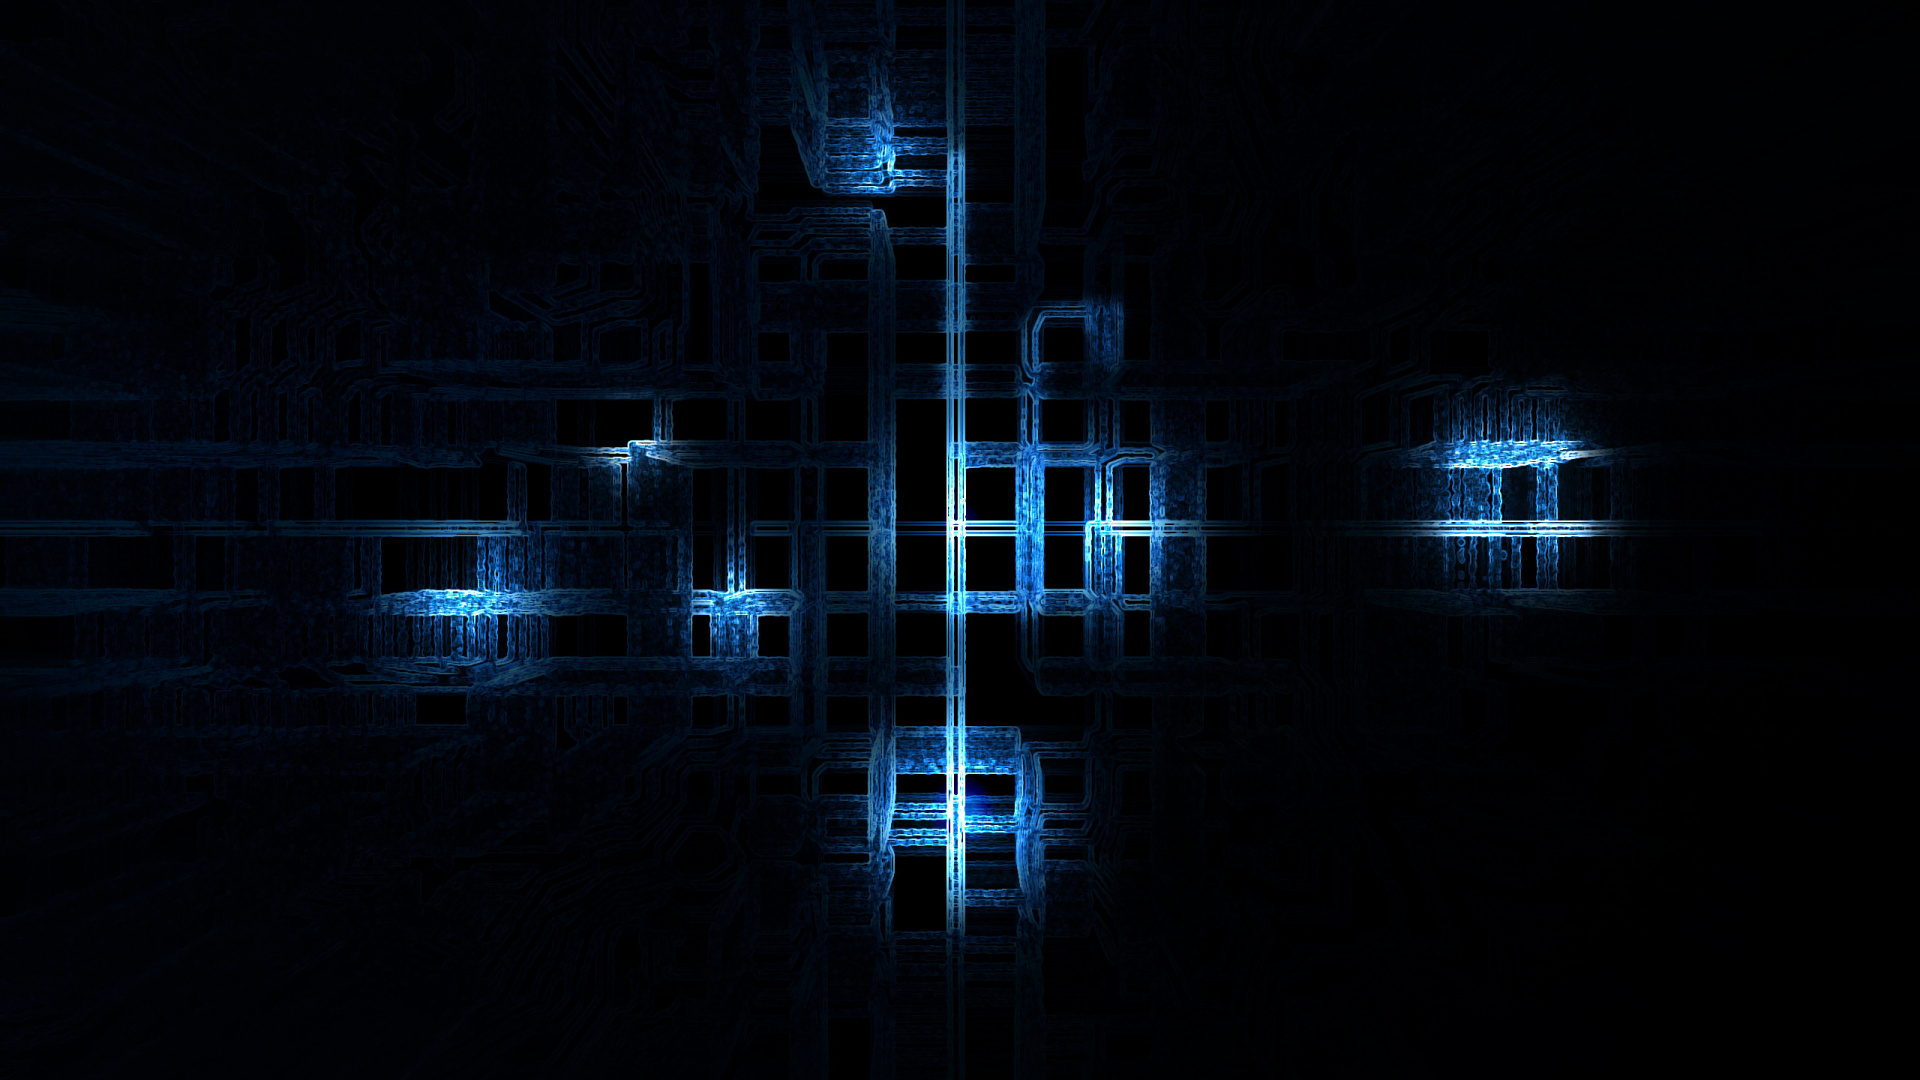 Blaues Und Weißes Licht im Dunklen Raum. Wallpaper in 1920x1080 Resolution